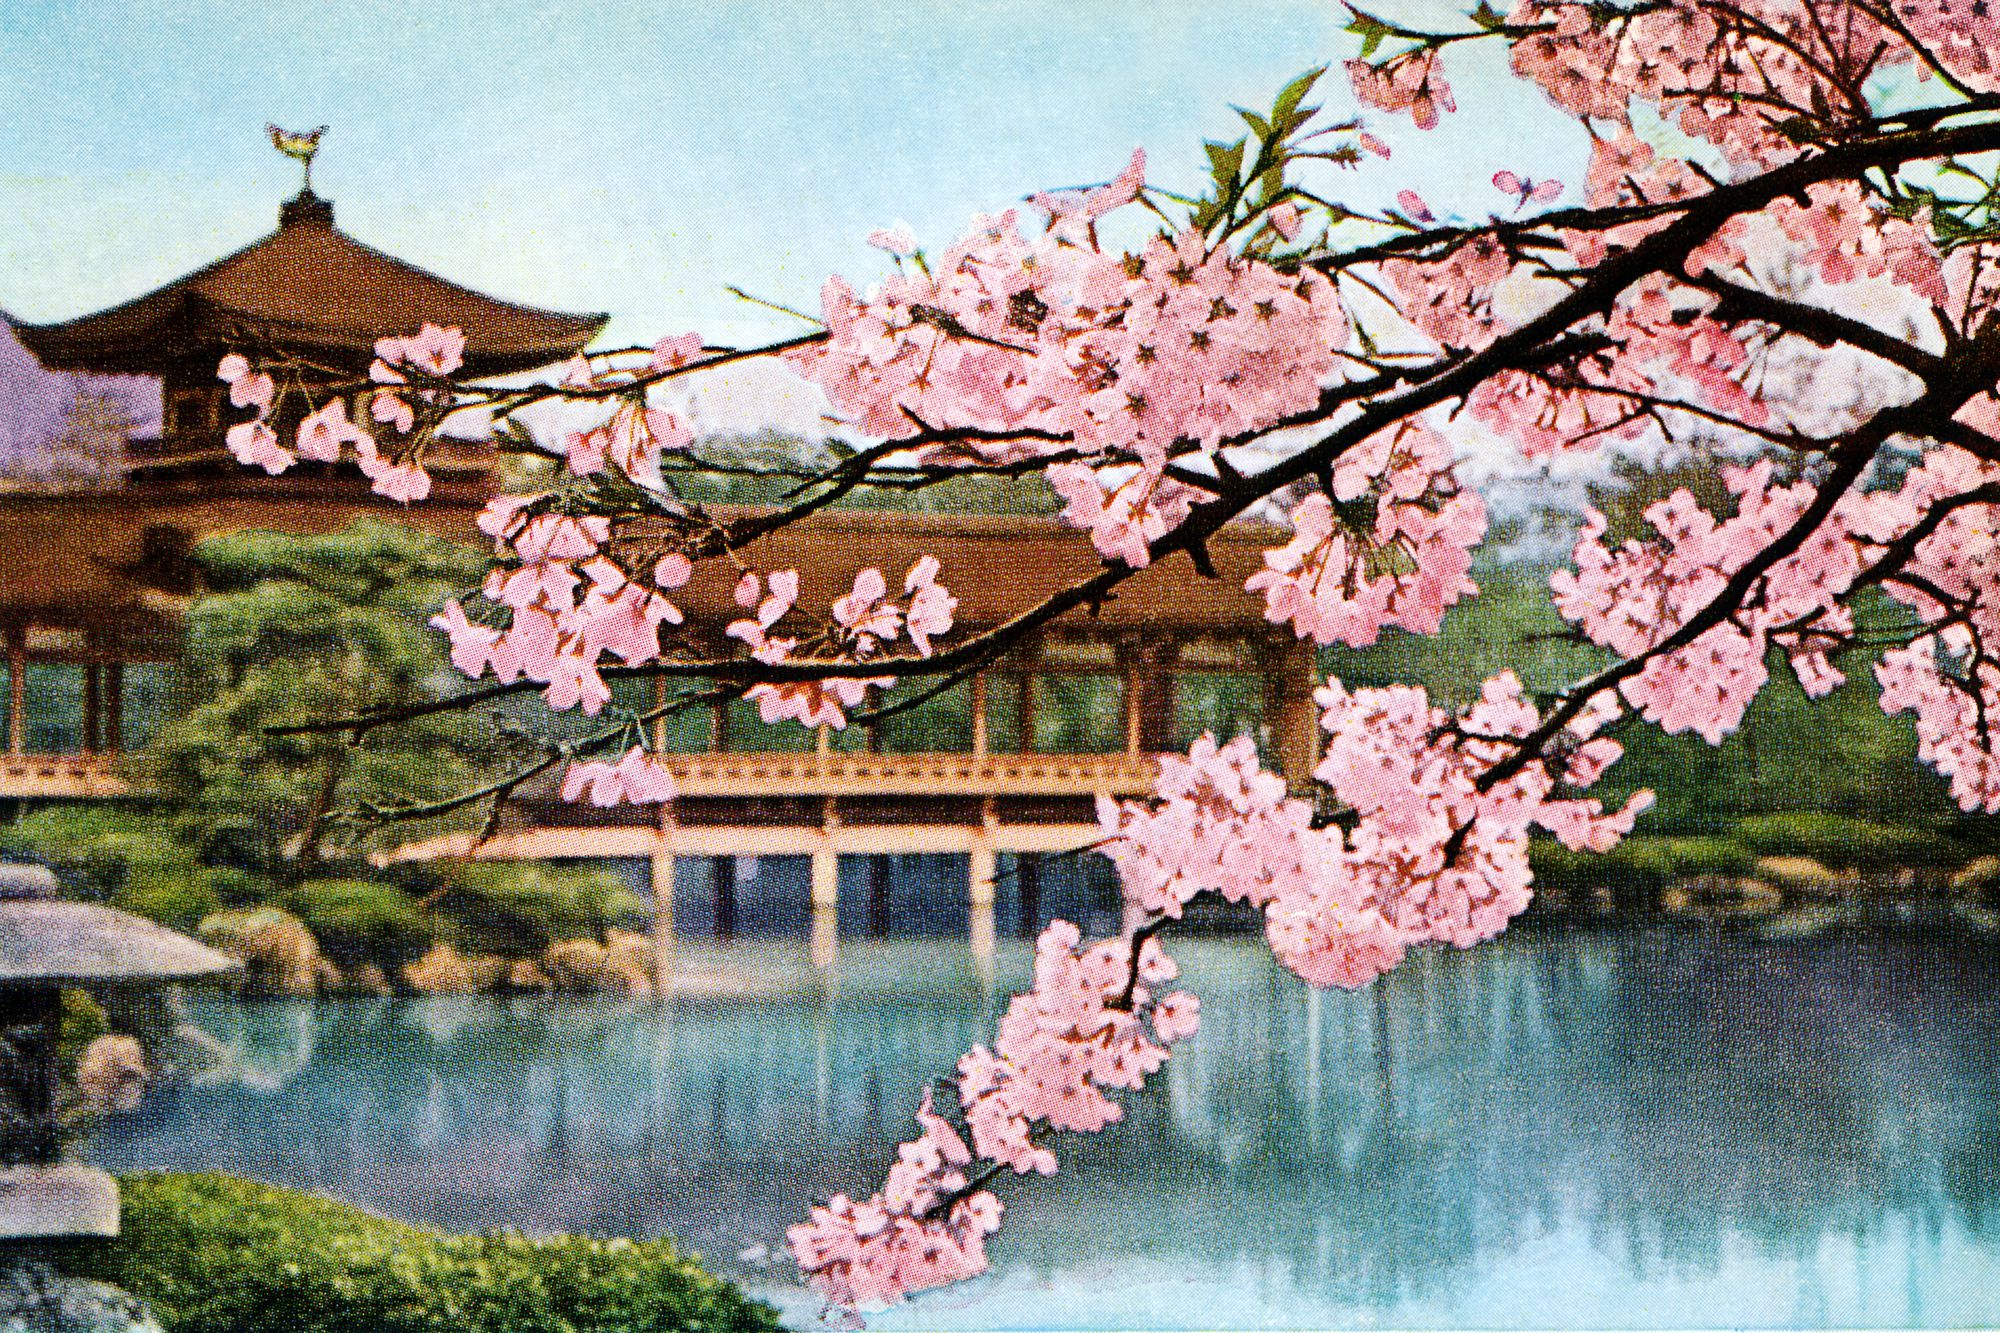 Lago con flores de cerezo y santuario - Japón